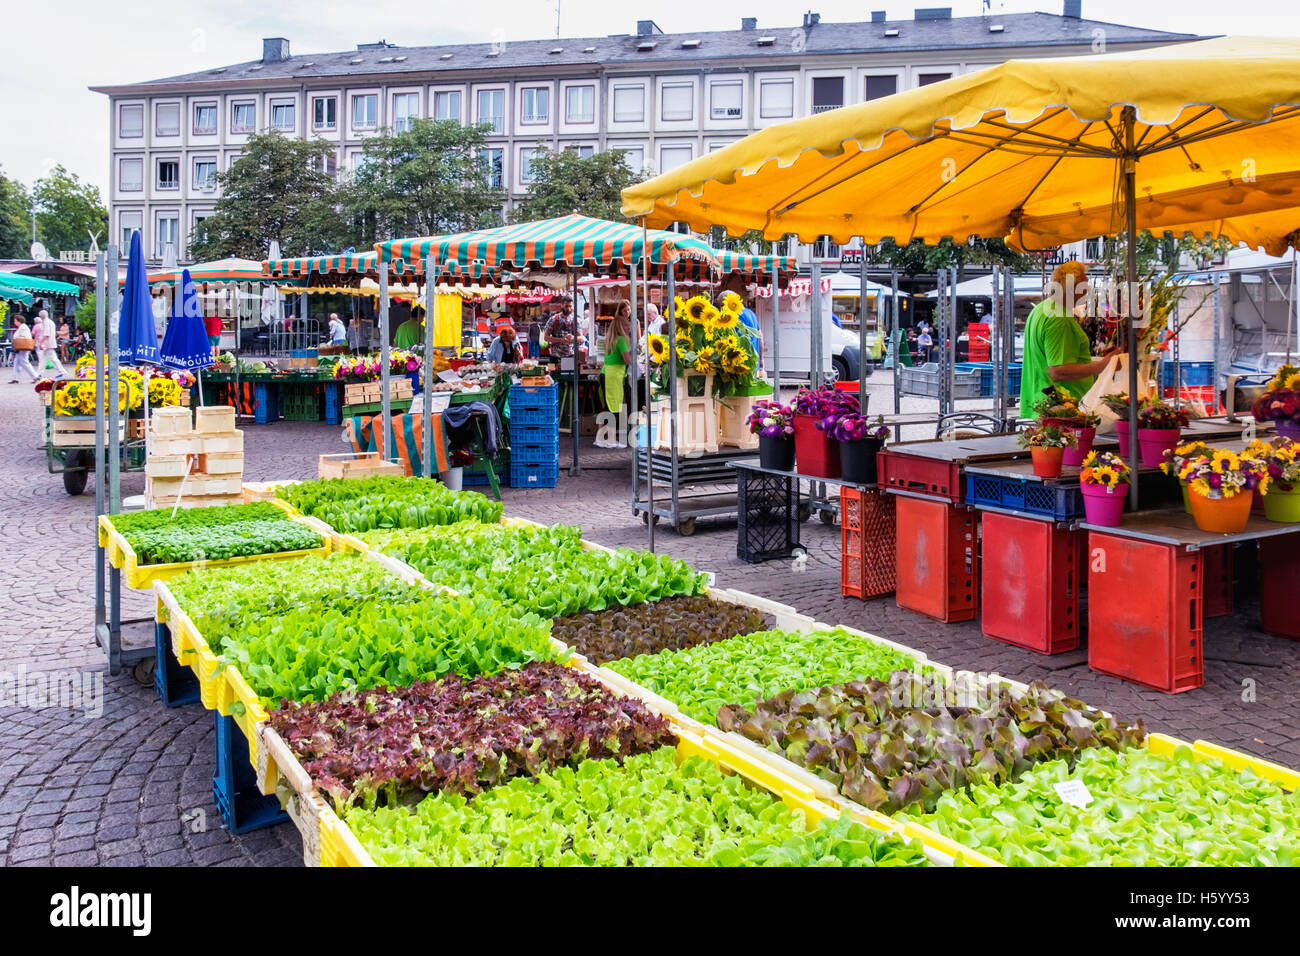 Farmers Market Stände verkaufen Baby Kopfsalat Pflanzen, frische Produkte,  Gemüse und Blumen, Marktplatz, Darmstadt, Deutschland Stockfotografie -  Alamy